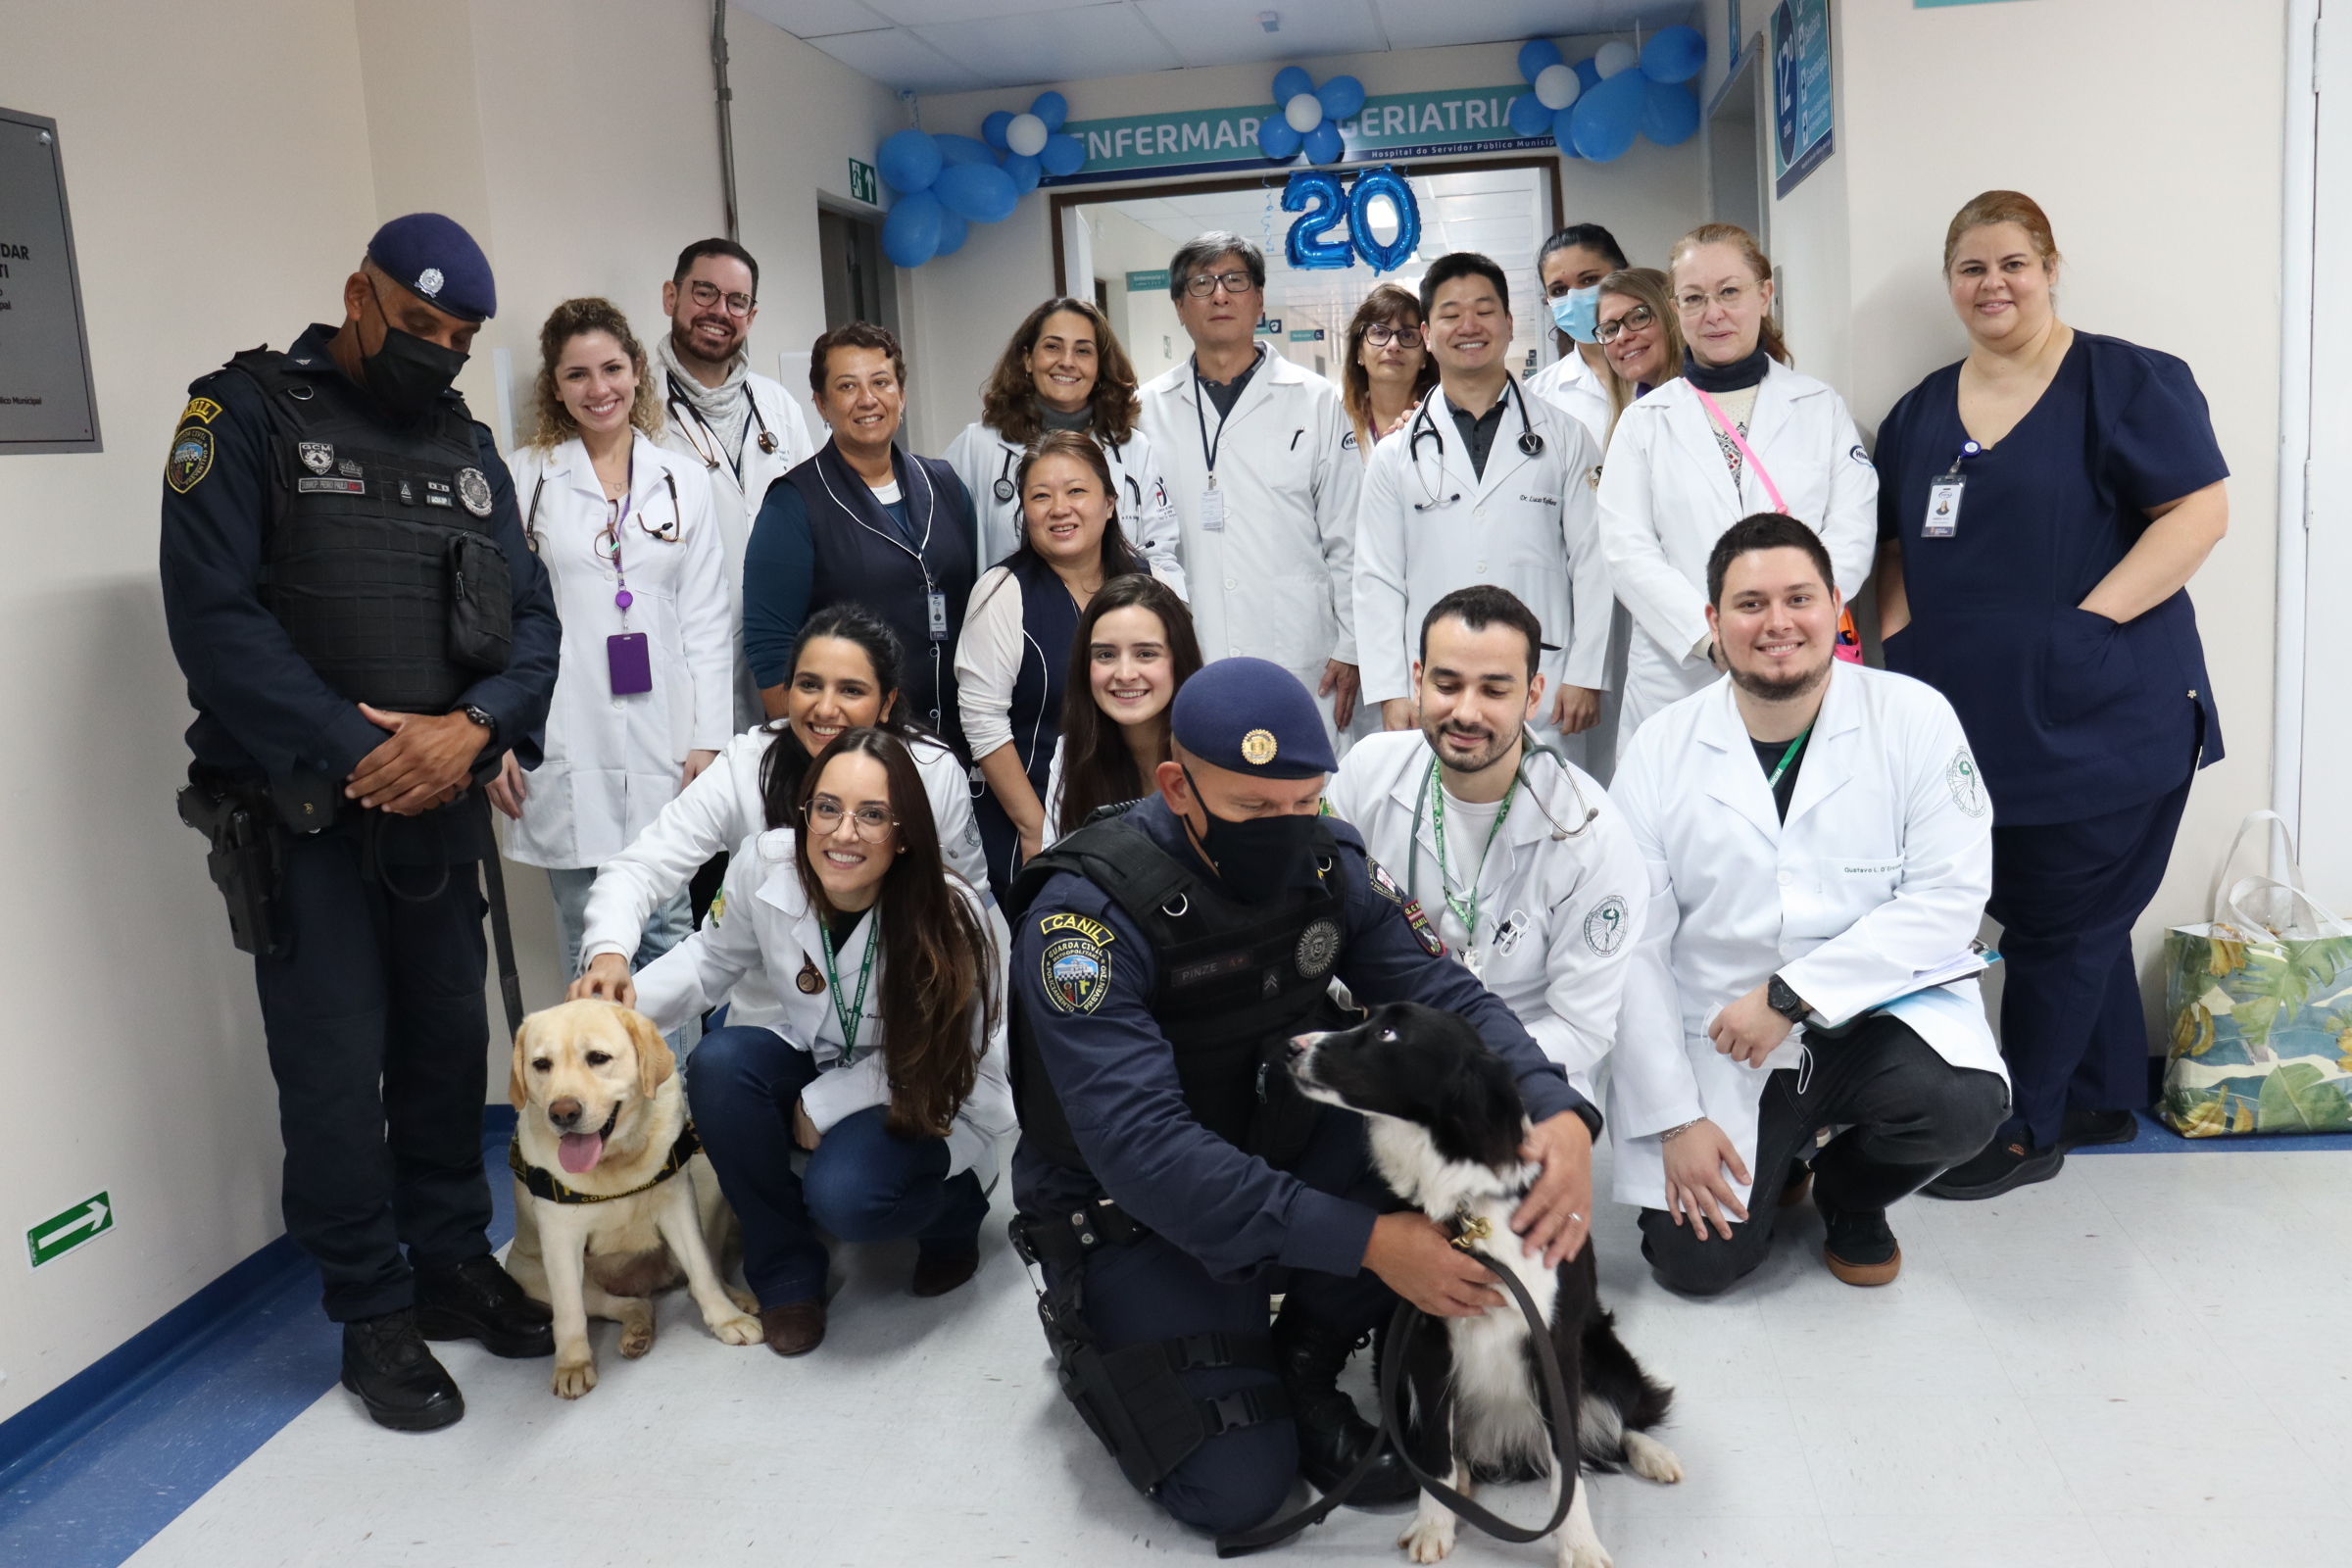 Foto da equipe de profissionais de saúde da equipe de Geriatria do HSPM, junto com os cães da Cinoterapia da Guarda Civil Metropolitana